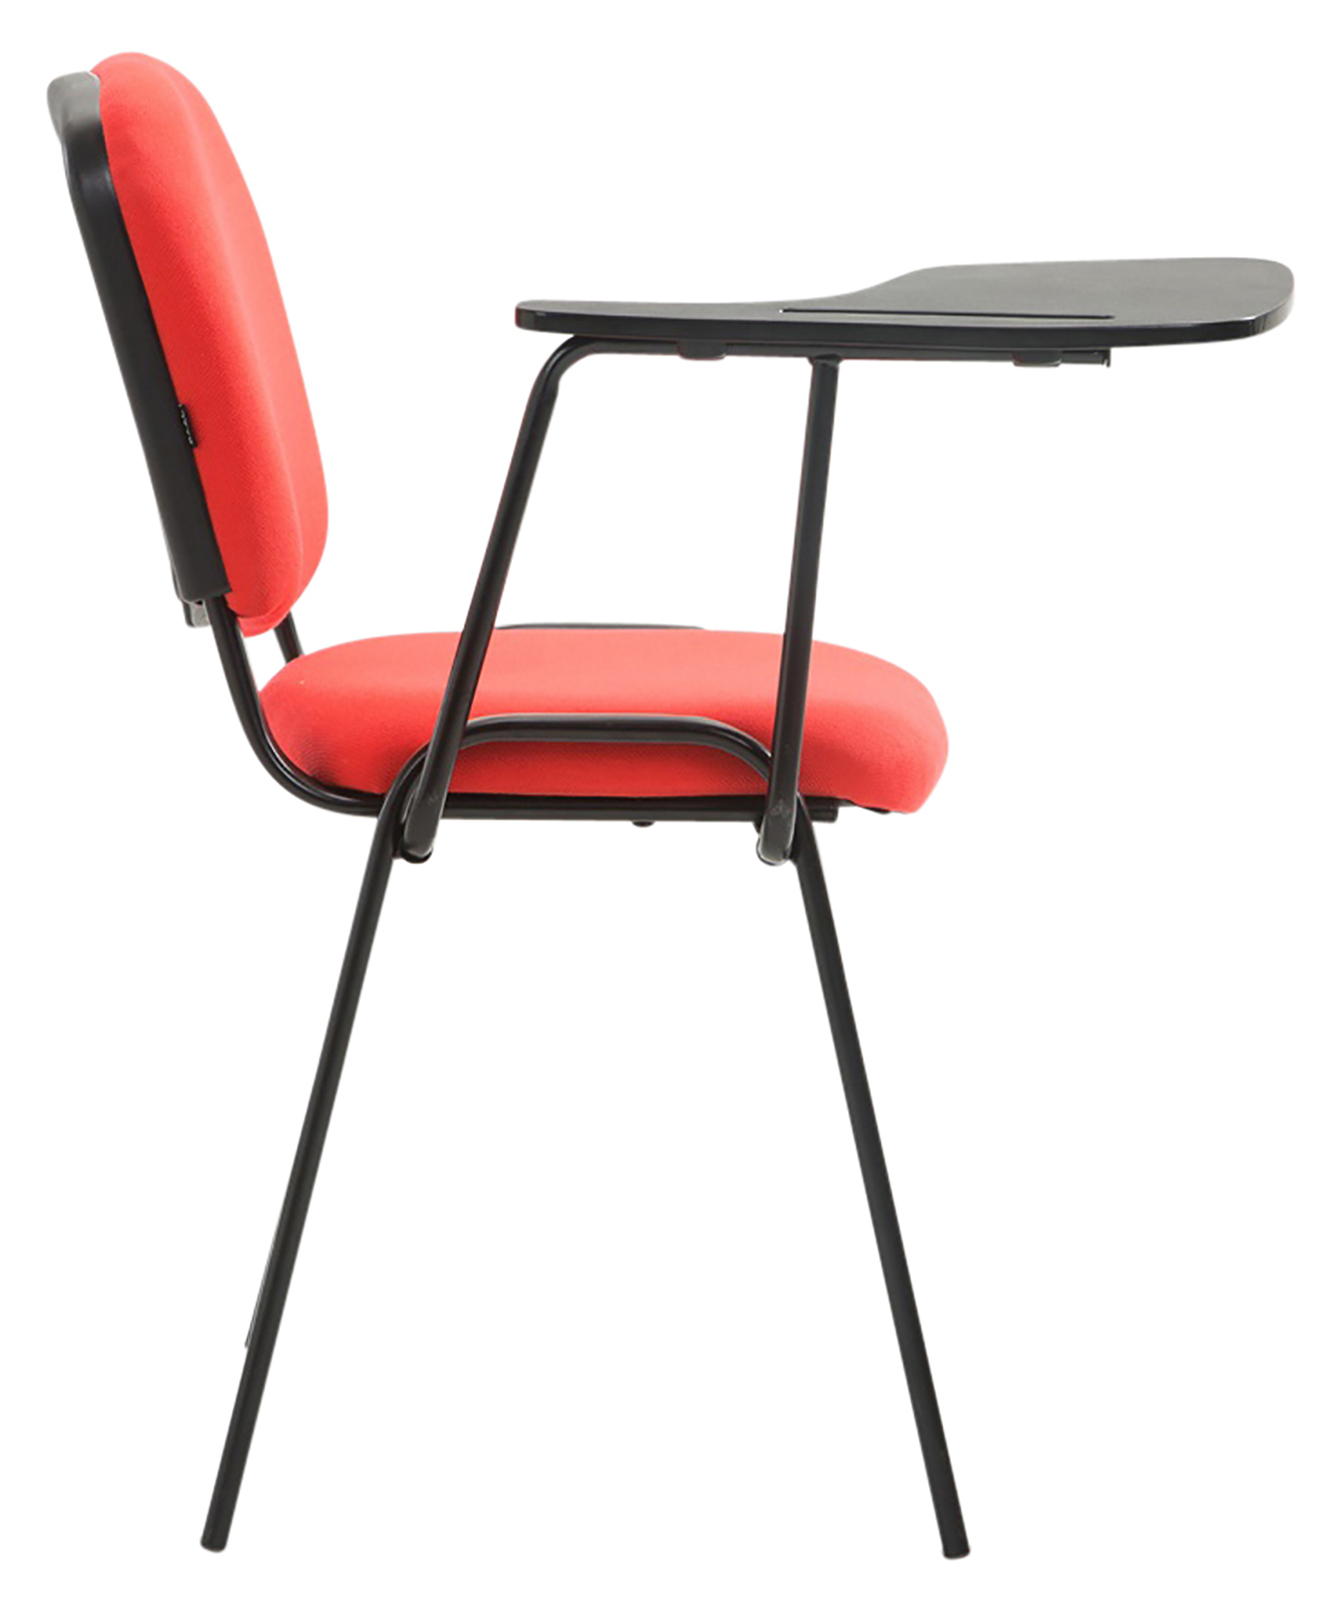 4er Set Stühle Ken mit Klapptisch Stoff rot